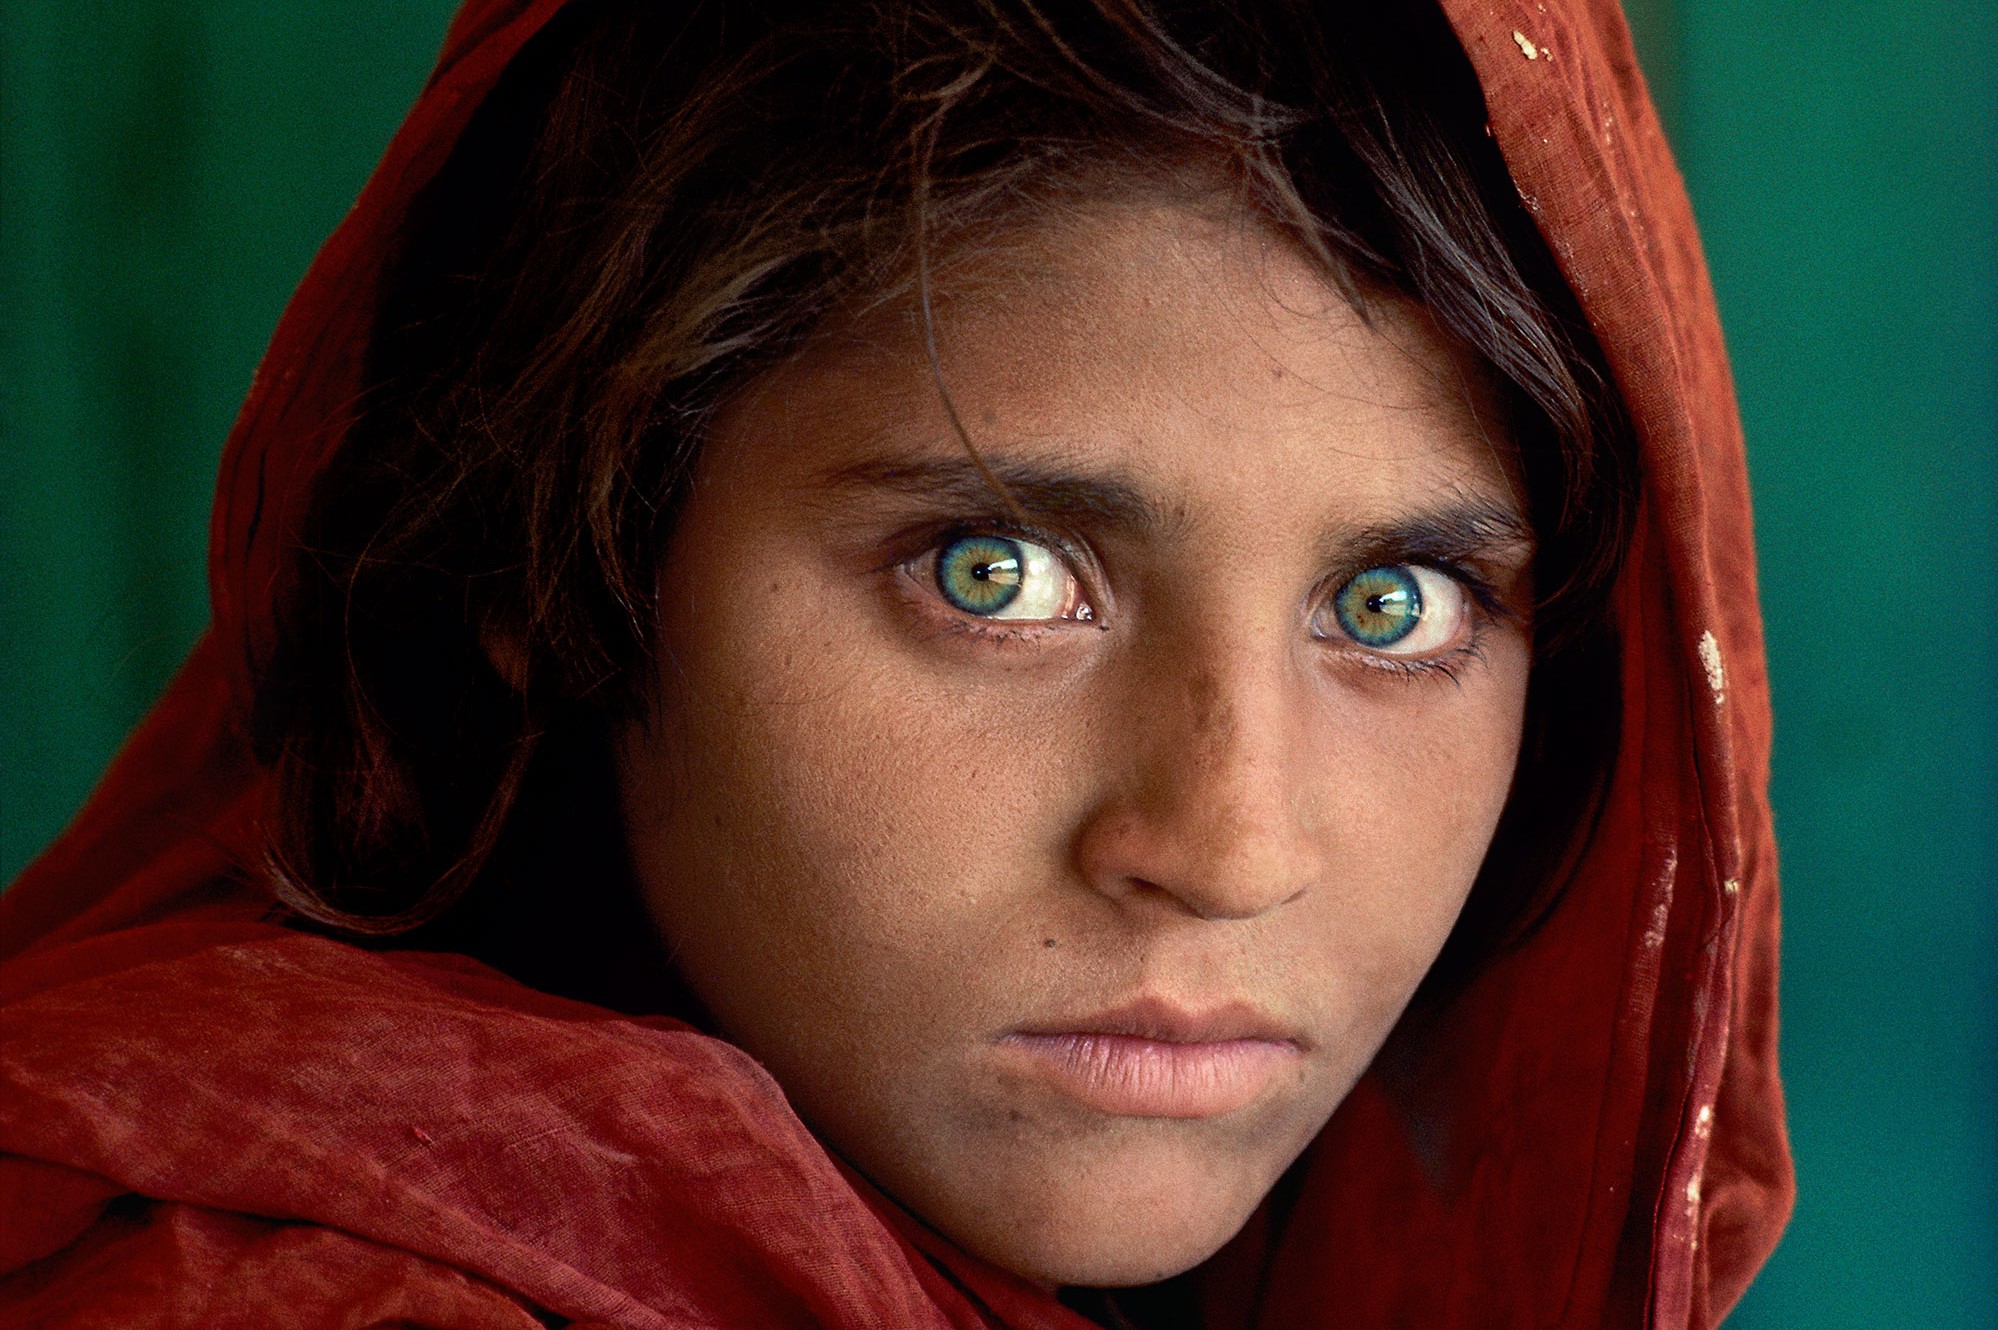 La ragazza afgana di McCurry. Storia della foto più celebre degli ultimi decenni